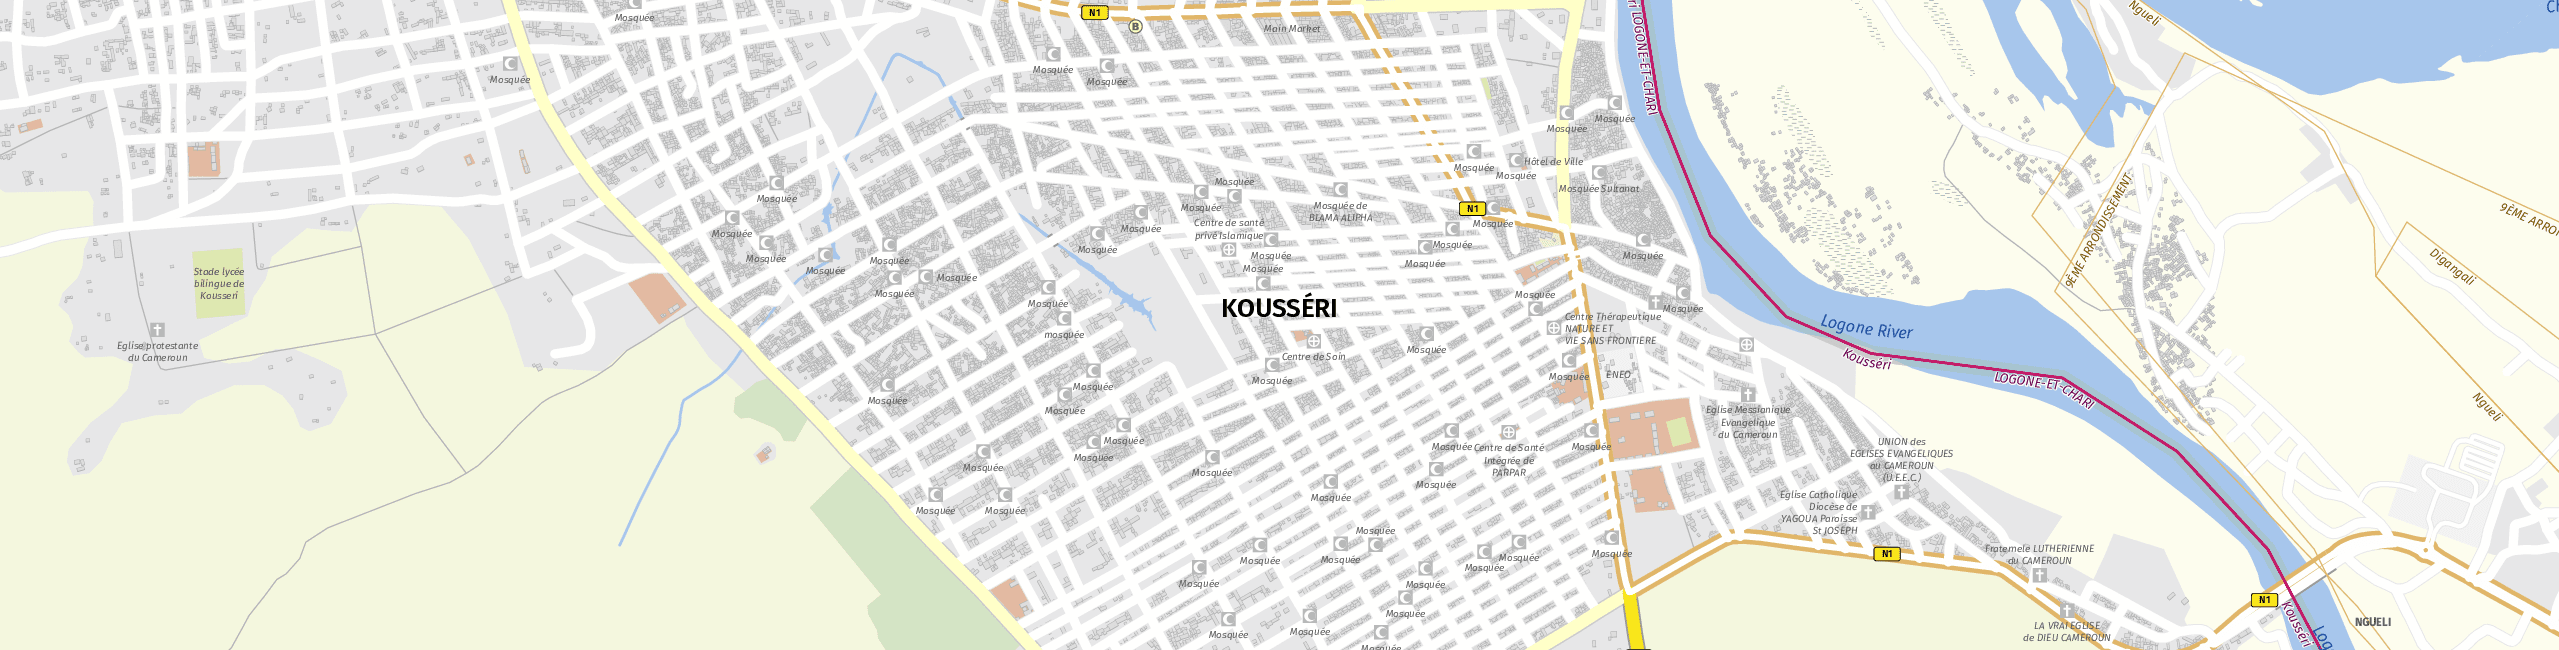 Stadtplan Kousséri zum Downloaden.